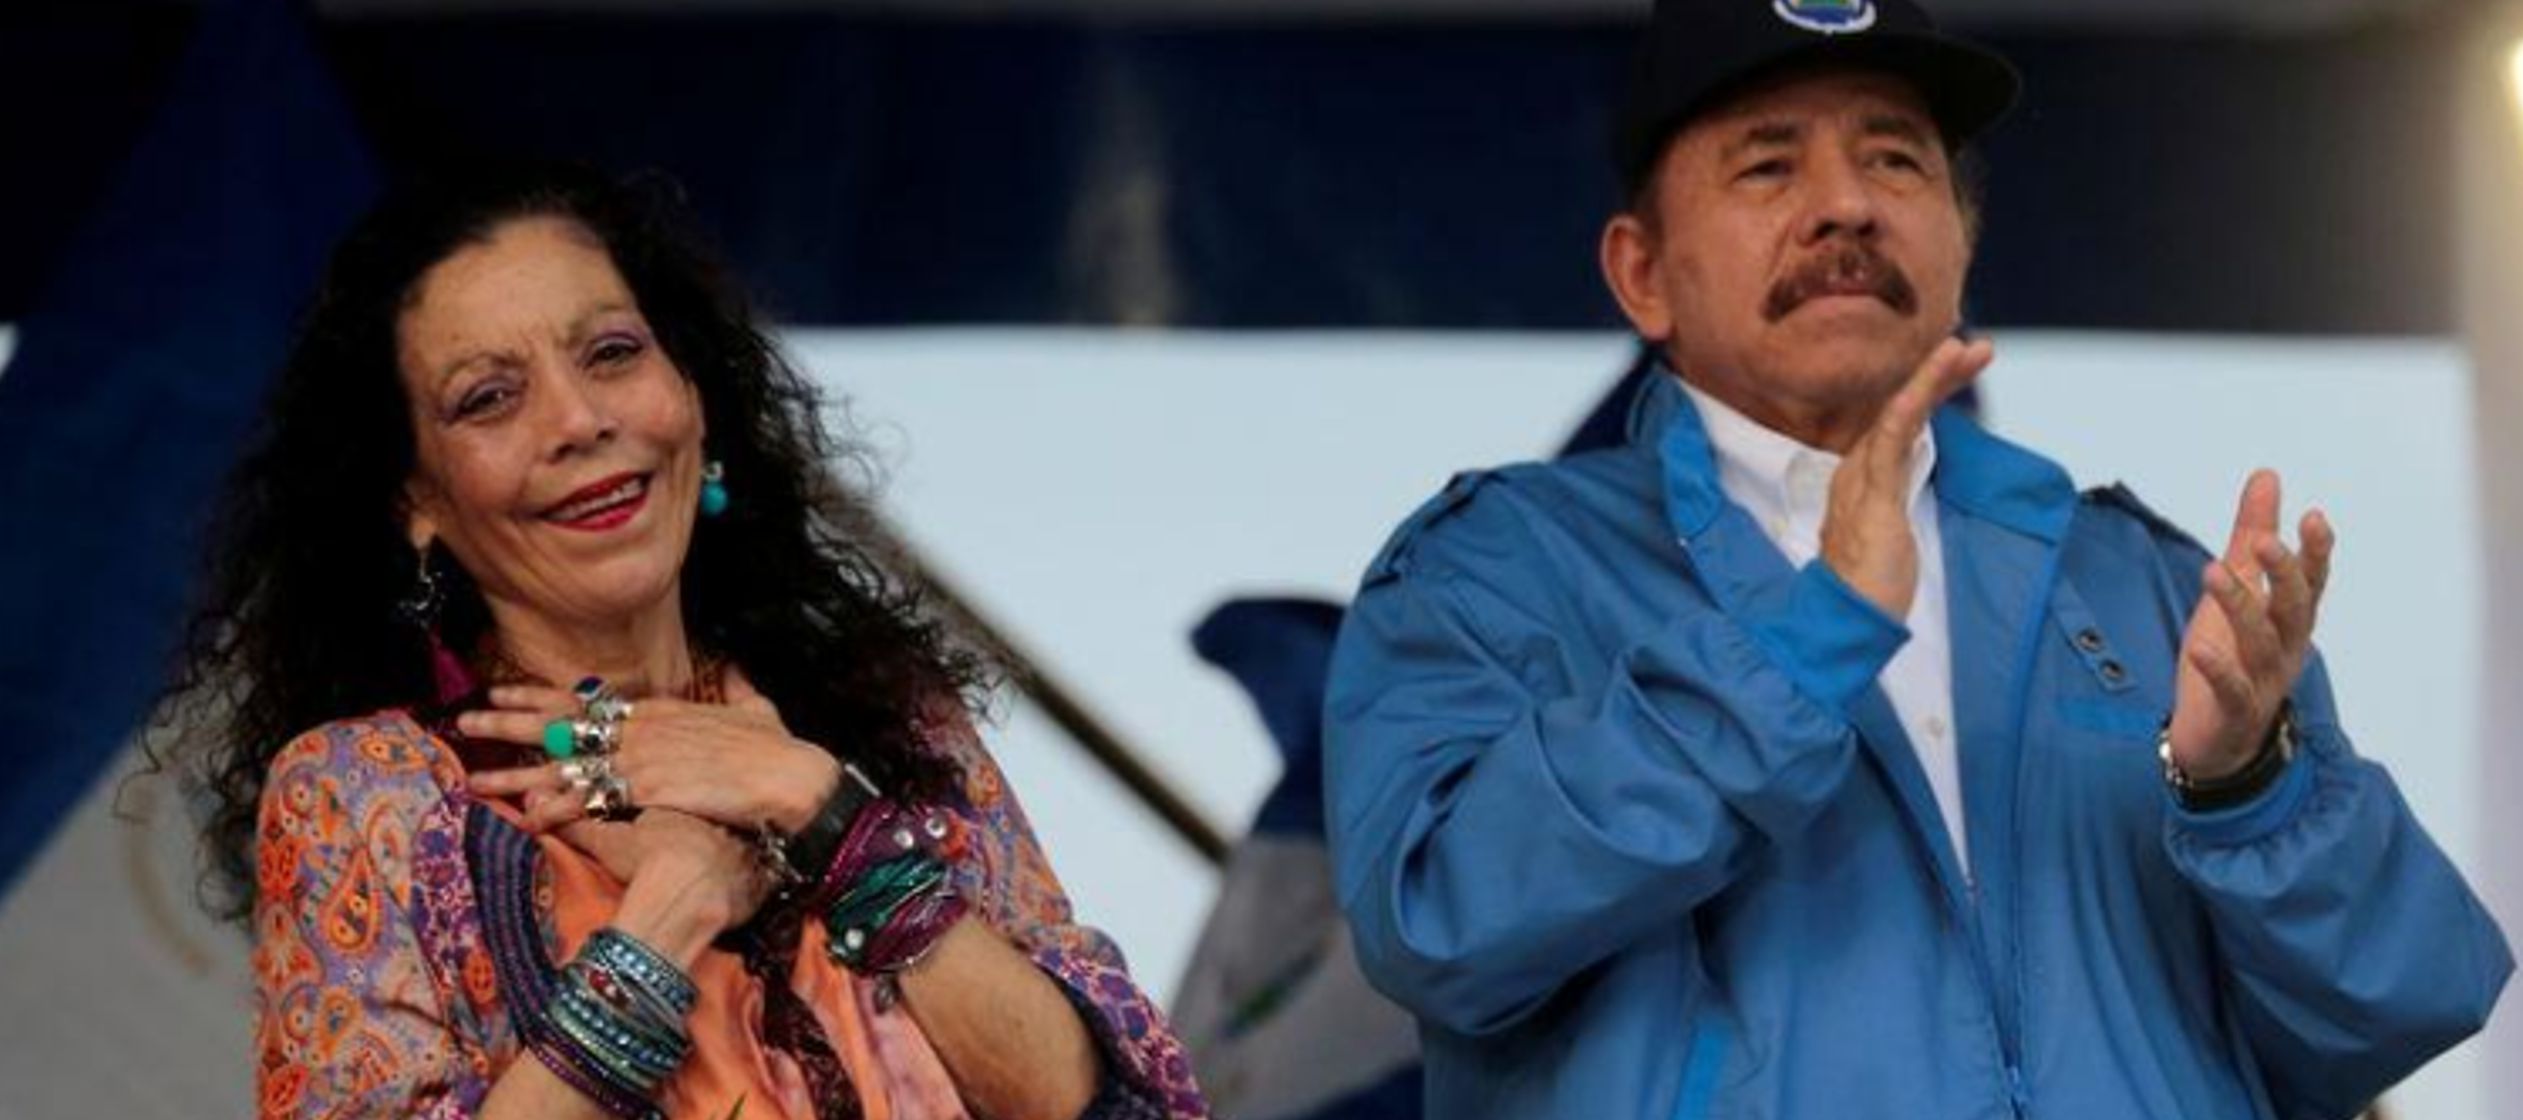 Más tarde, el gobierno de Nicaragua dijo en un comunicado que rechaza 